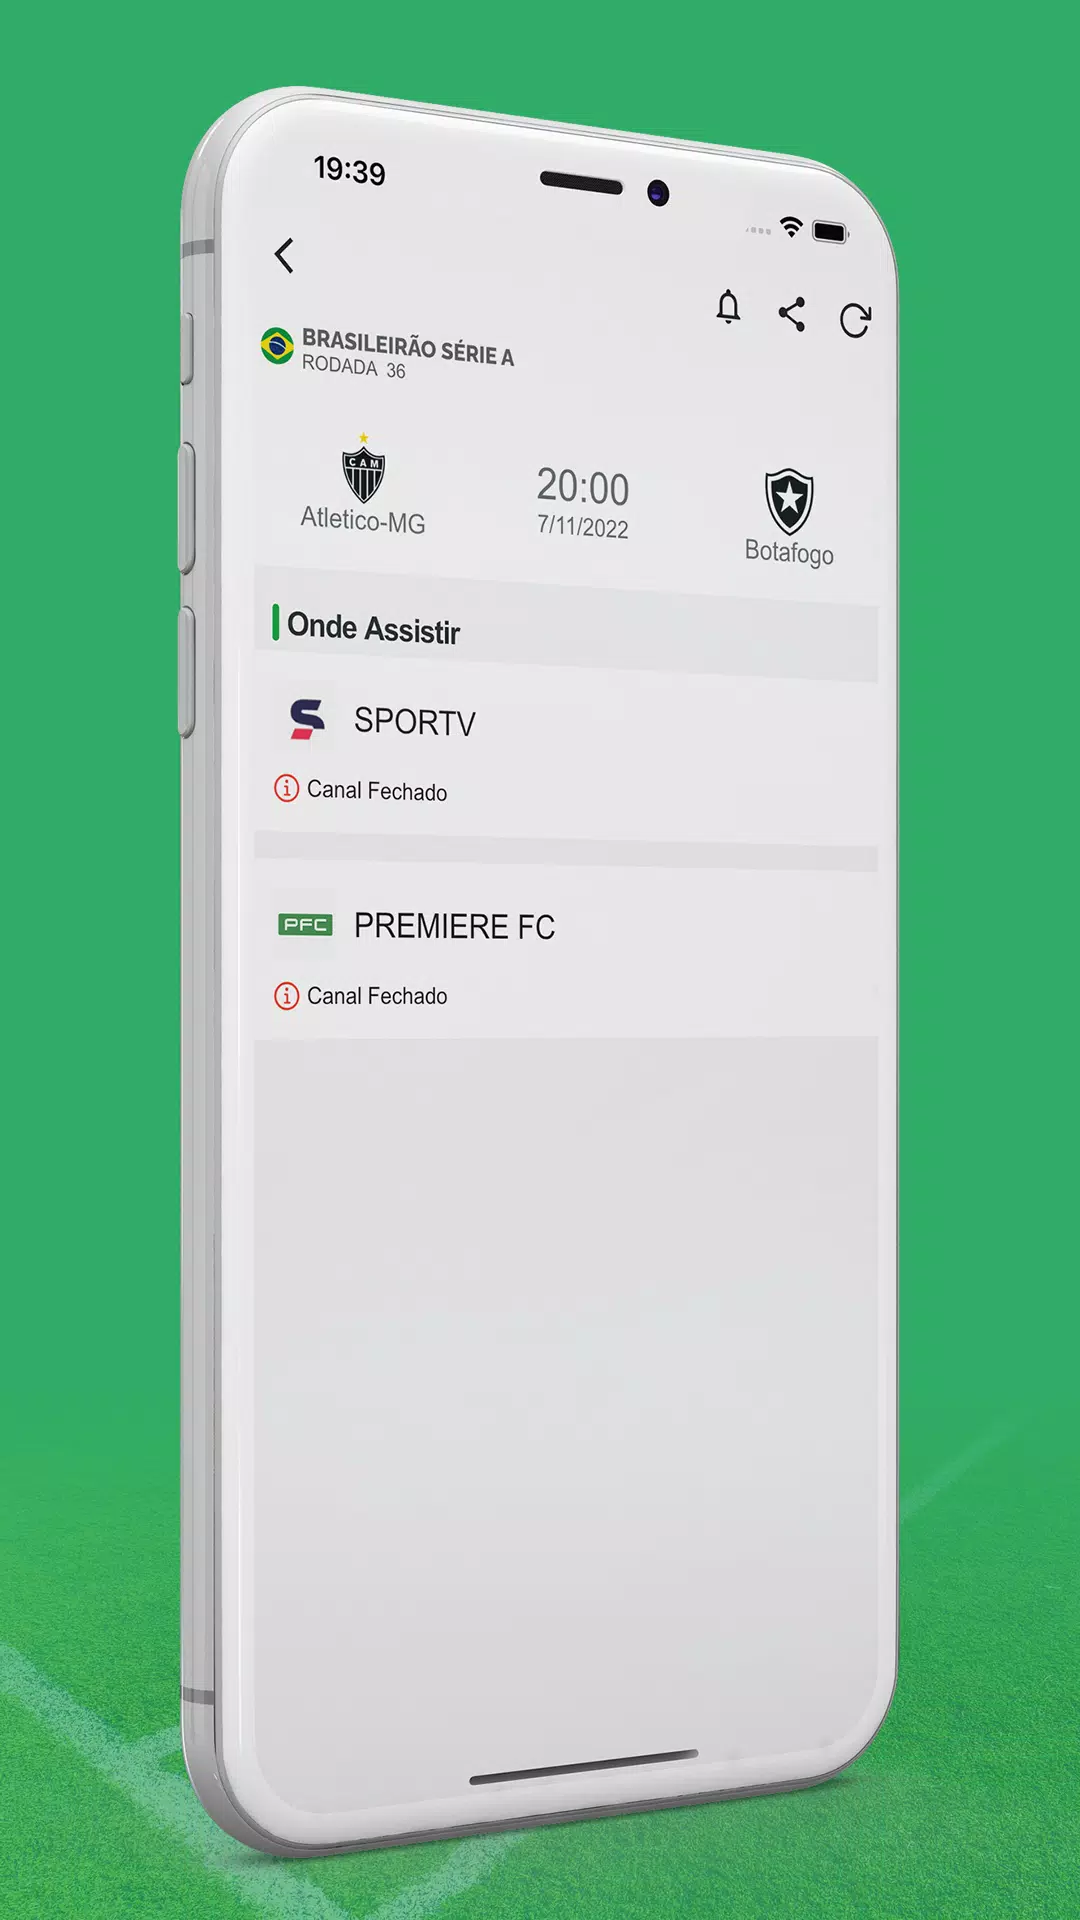 FTTV - Assistir TV - Futebol Online Apk Download for Android- Latest  version - assistir.tv.online.futeboltv